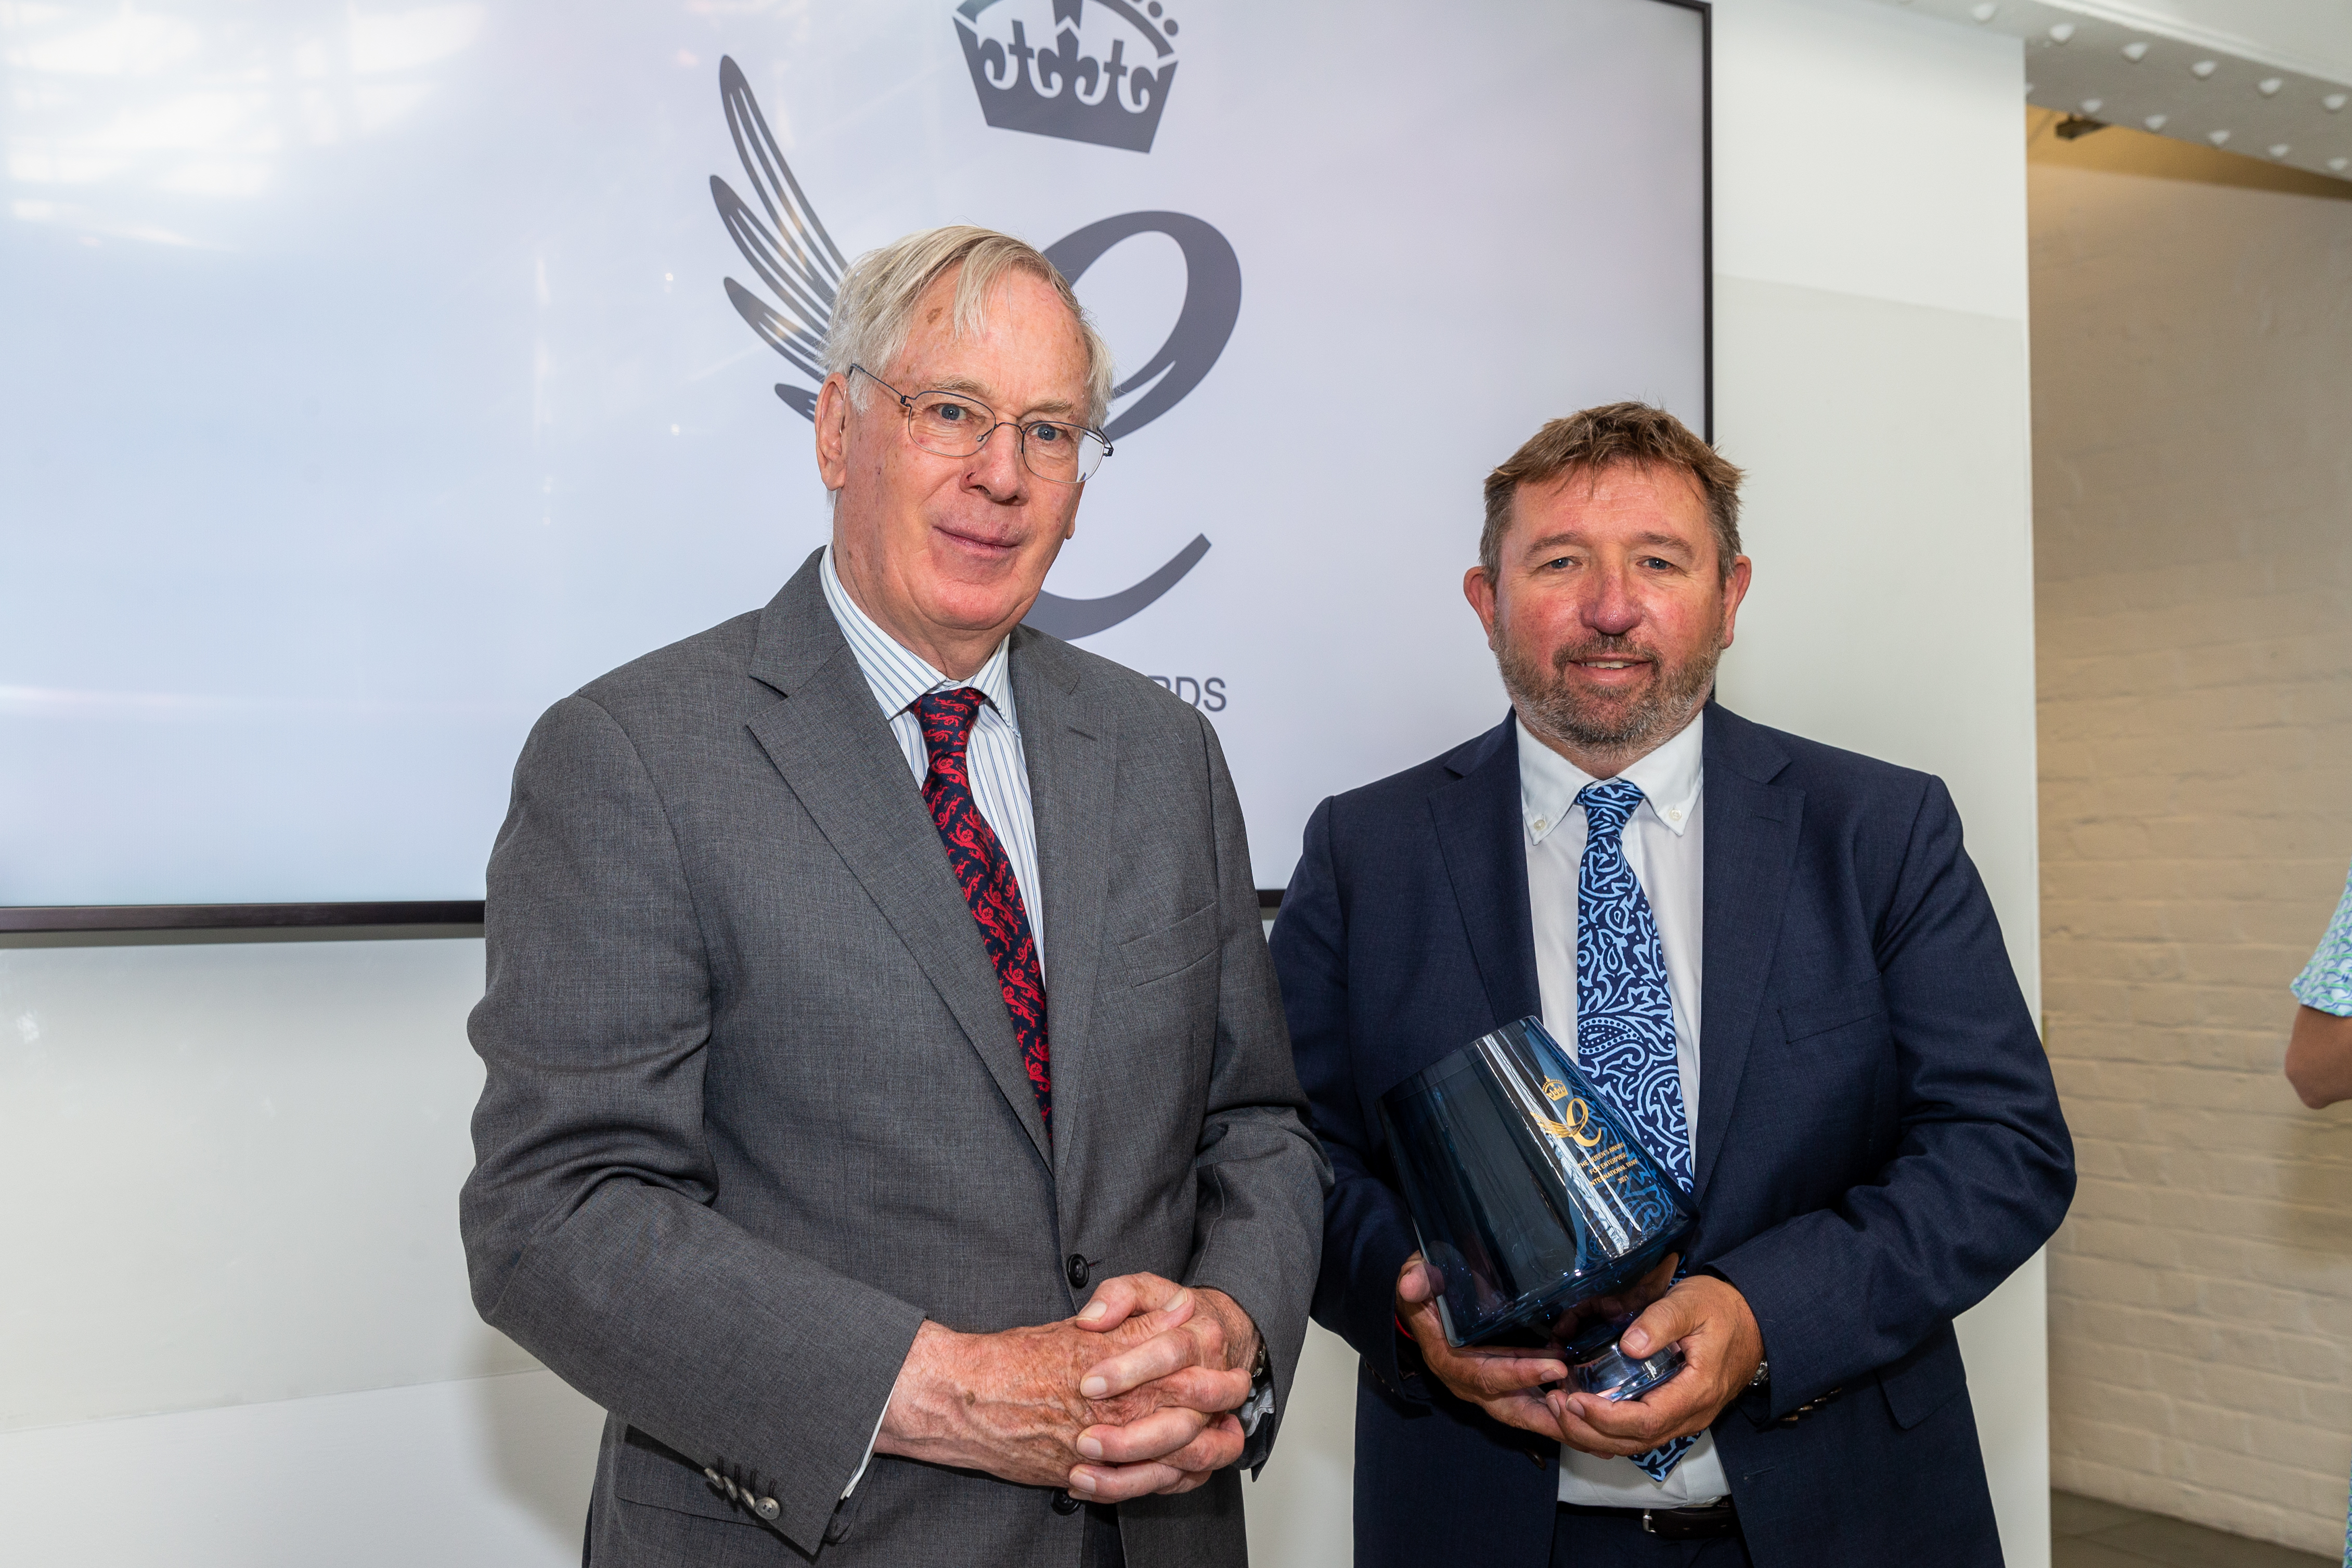 The Duke of Gloucester awarding The Queen's Award for Enterprise